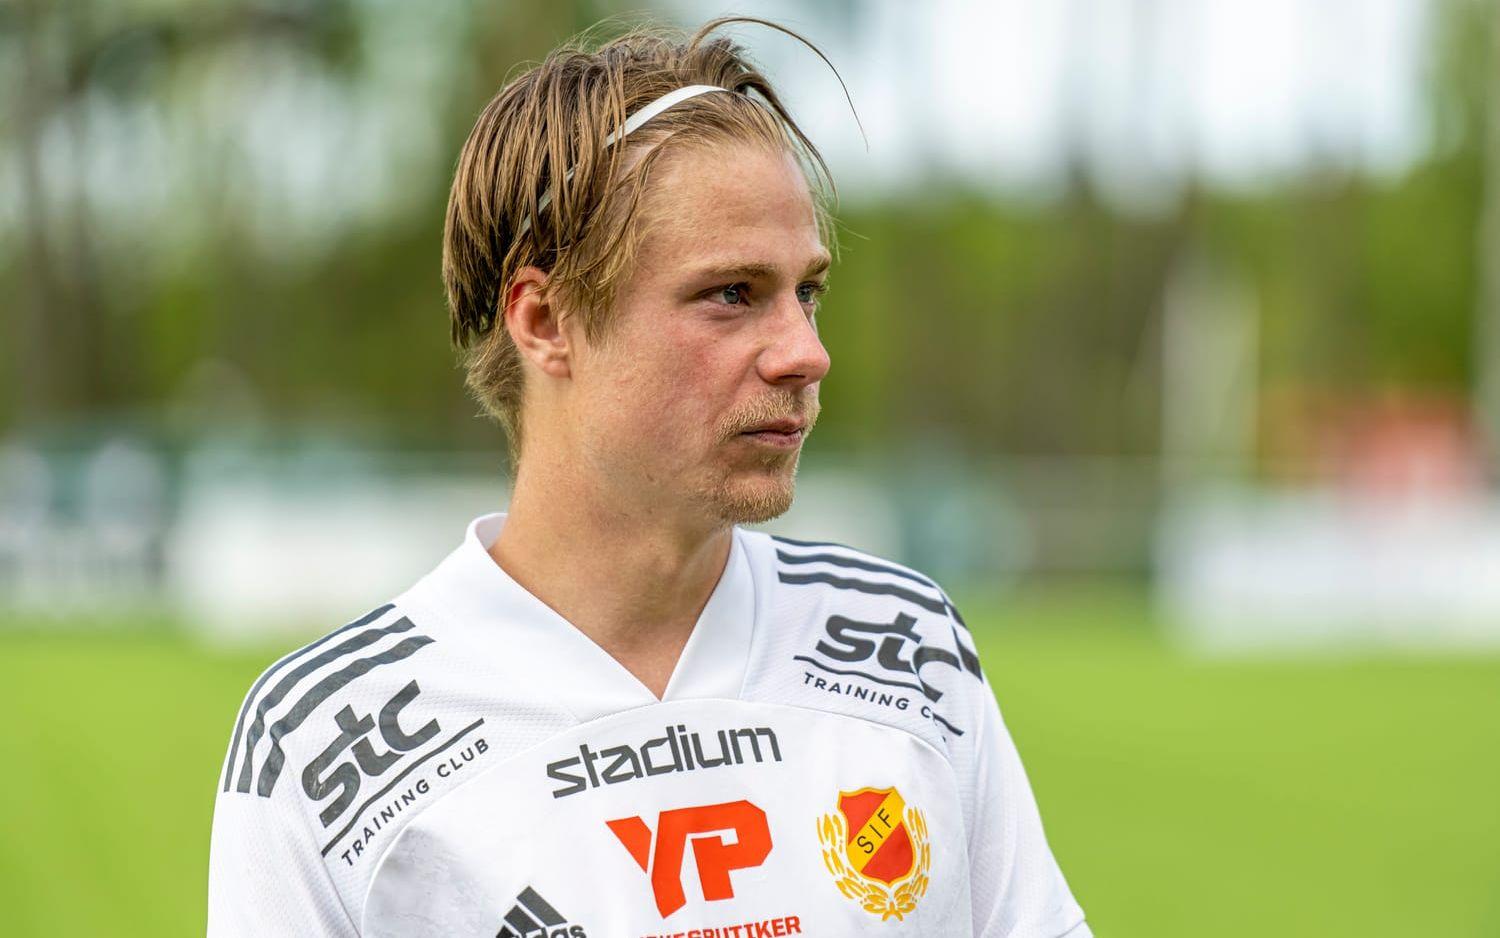 Skoftebyns lagkapten Hampus Sikström var besviken efter matchen.